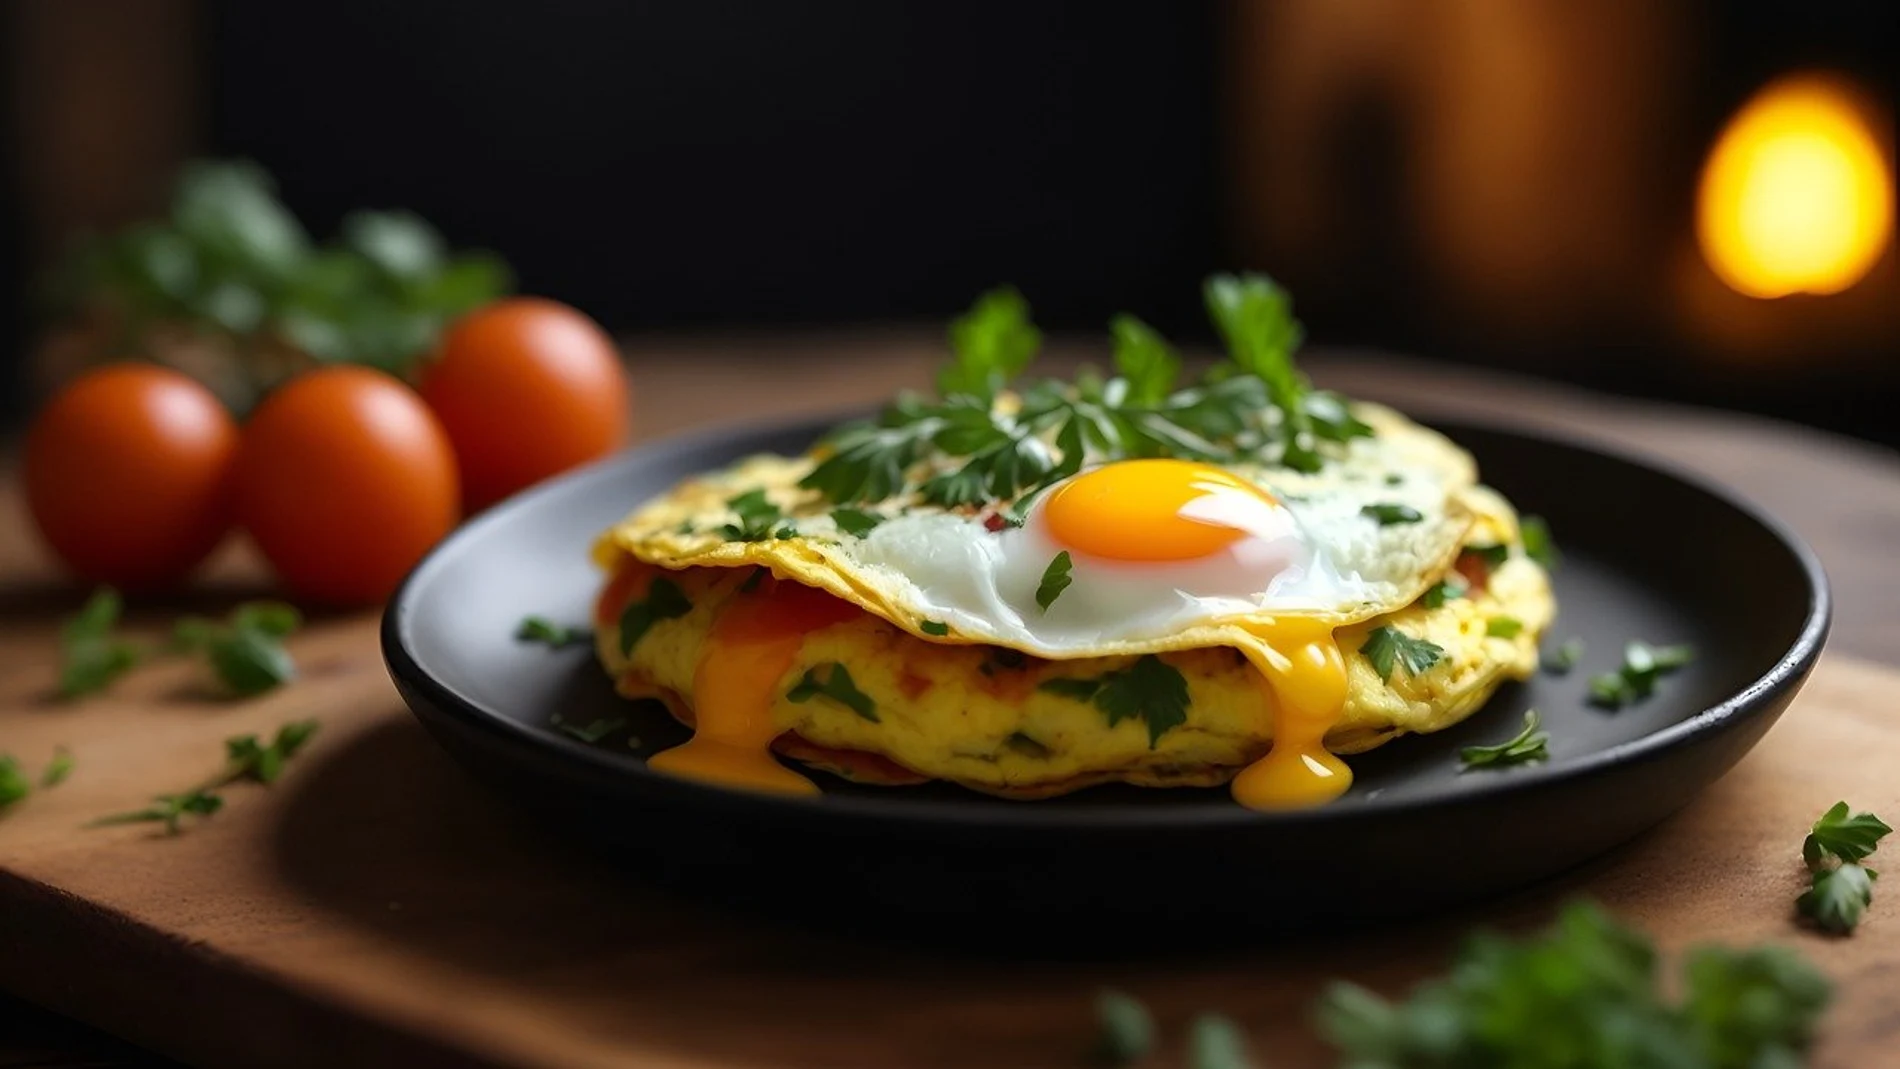 Huevos de desayuno, una gran proteína